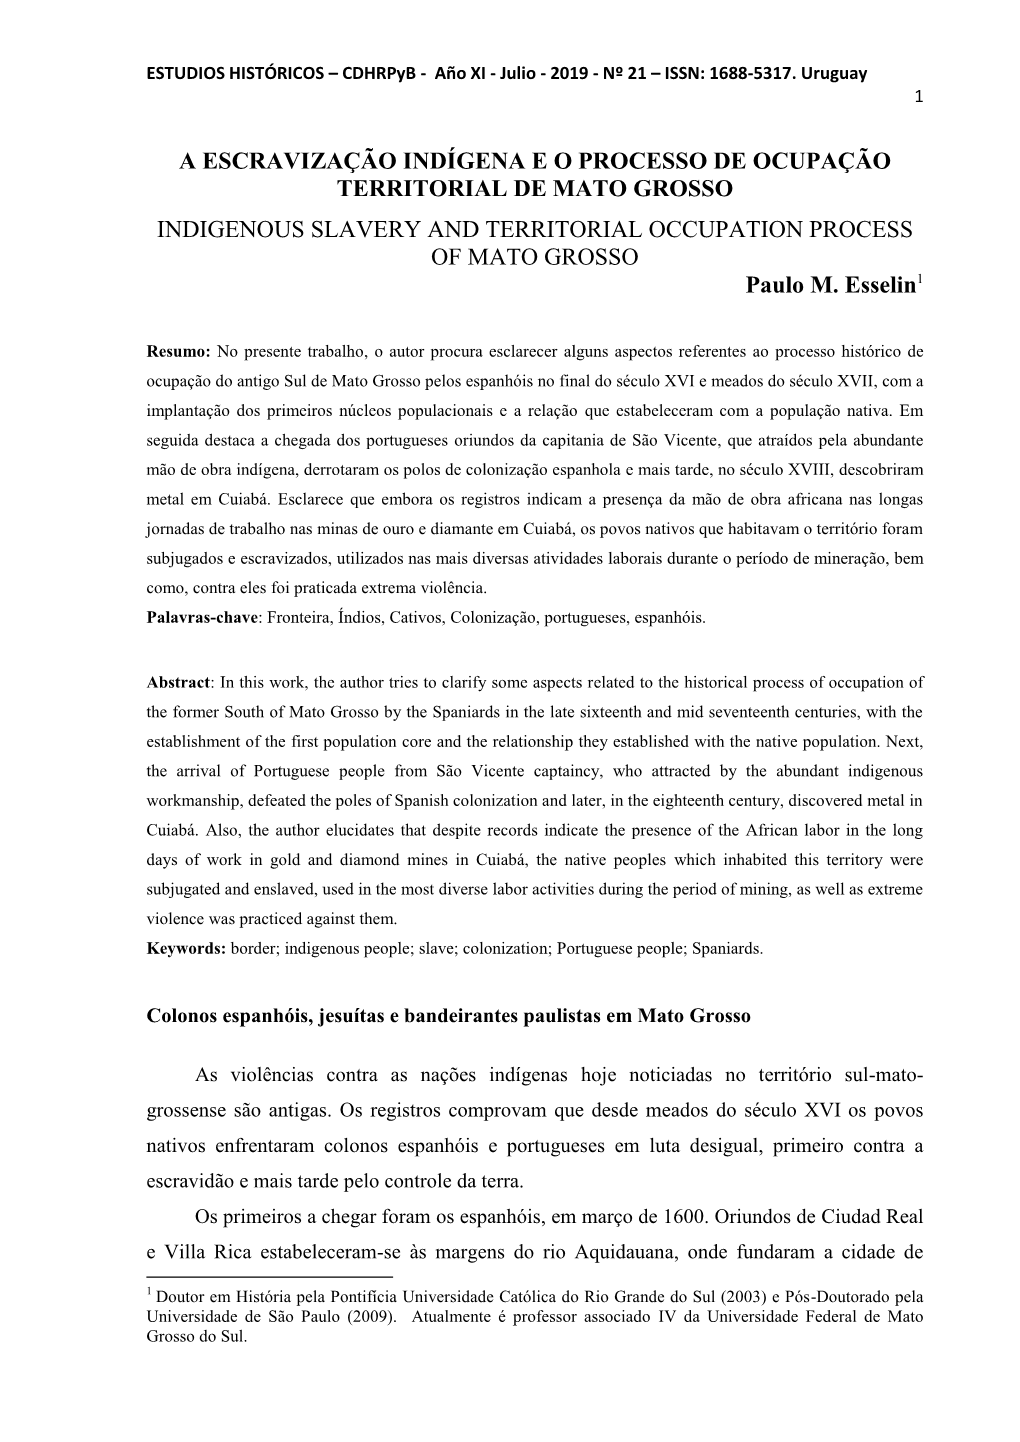 A ESCRAVIZAÇÃO INDÍGENA E O PROCESSO DE OCUPAÇÃO TERRITORIAL DE MATO GROSSO INDIGENOUS SLAVERY and TERRITORIAL OCCUPATION PROCESS of MATO GROSSO Paulo M